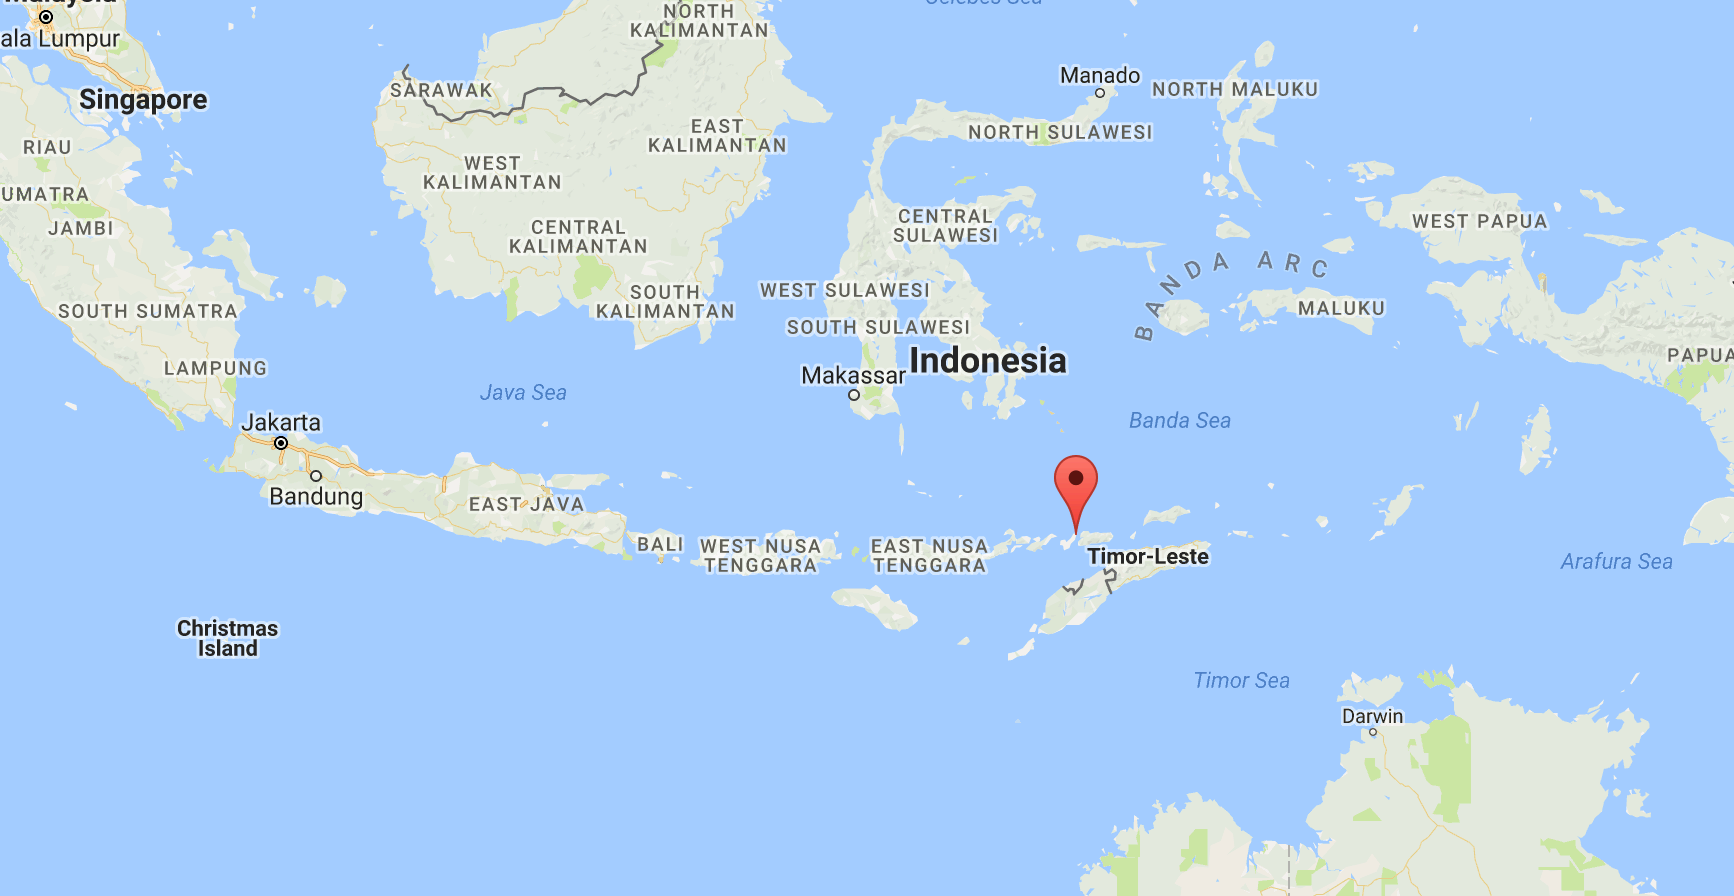 Бали остров в малайском архипелаге (достопримечательности)